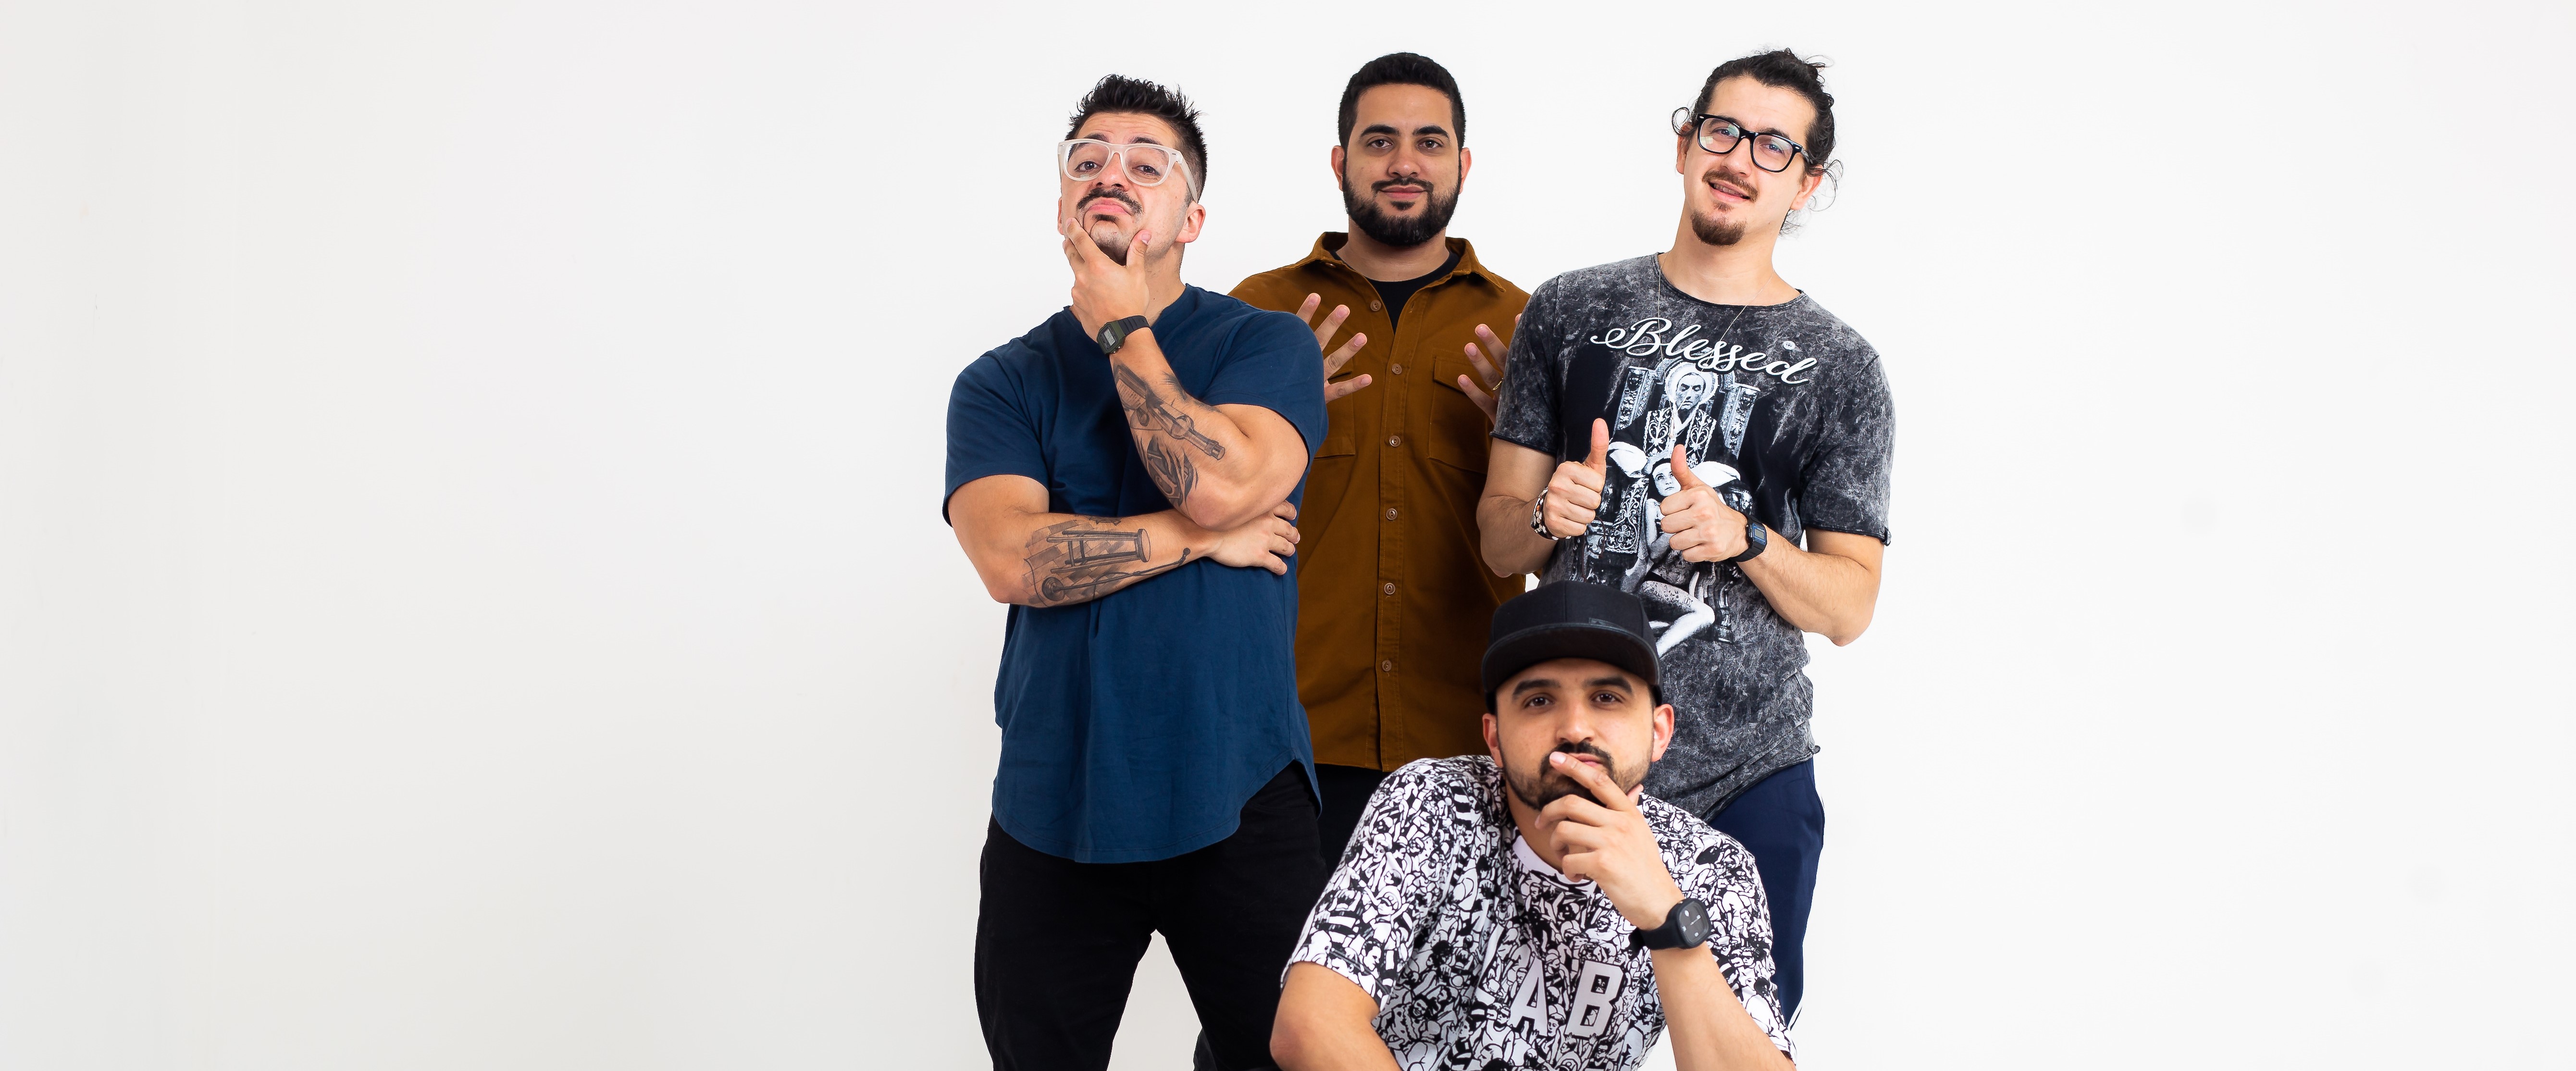 Ribeirão Preto apresenta o show de comédia "4 Amigos" na sexta-feira, dia 13 de outubro